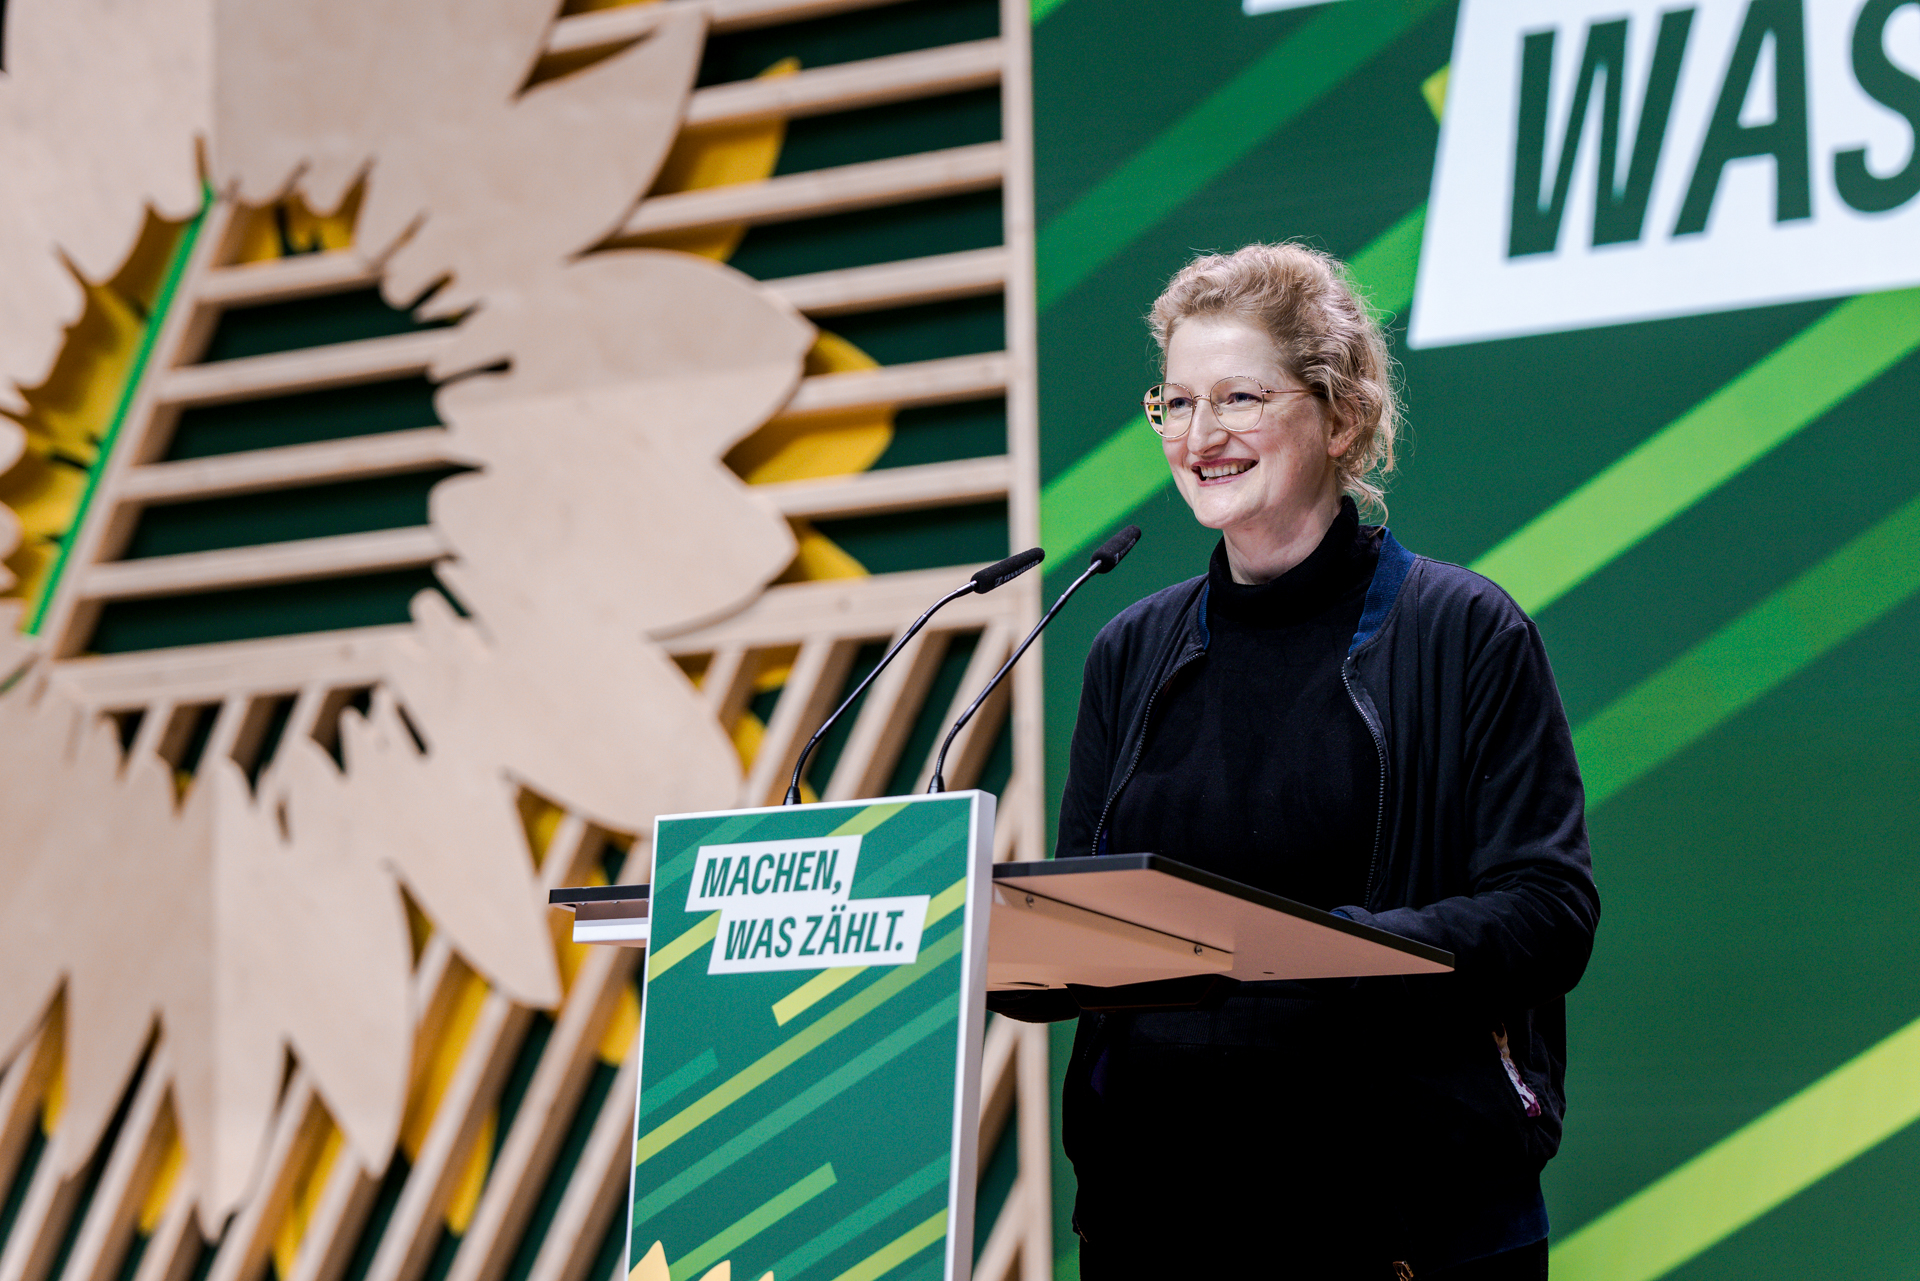 Andrea Wörle vor einem Redepult mit der Aufschrift "Machen, was zählt", Bühnenaufbau im Hintergrund mit großem Sonnenblumen-Logo, Holzleisten und Streifen in verschiedenen Grüntönen